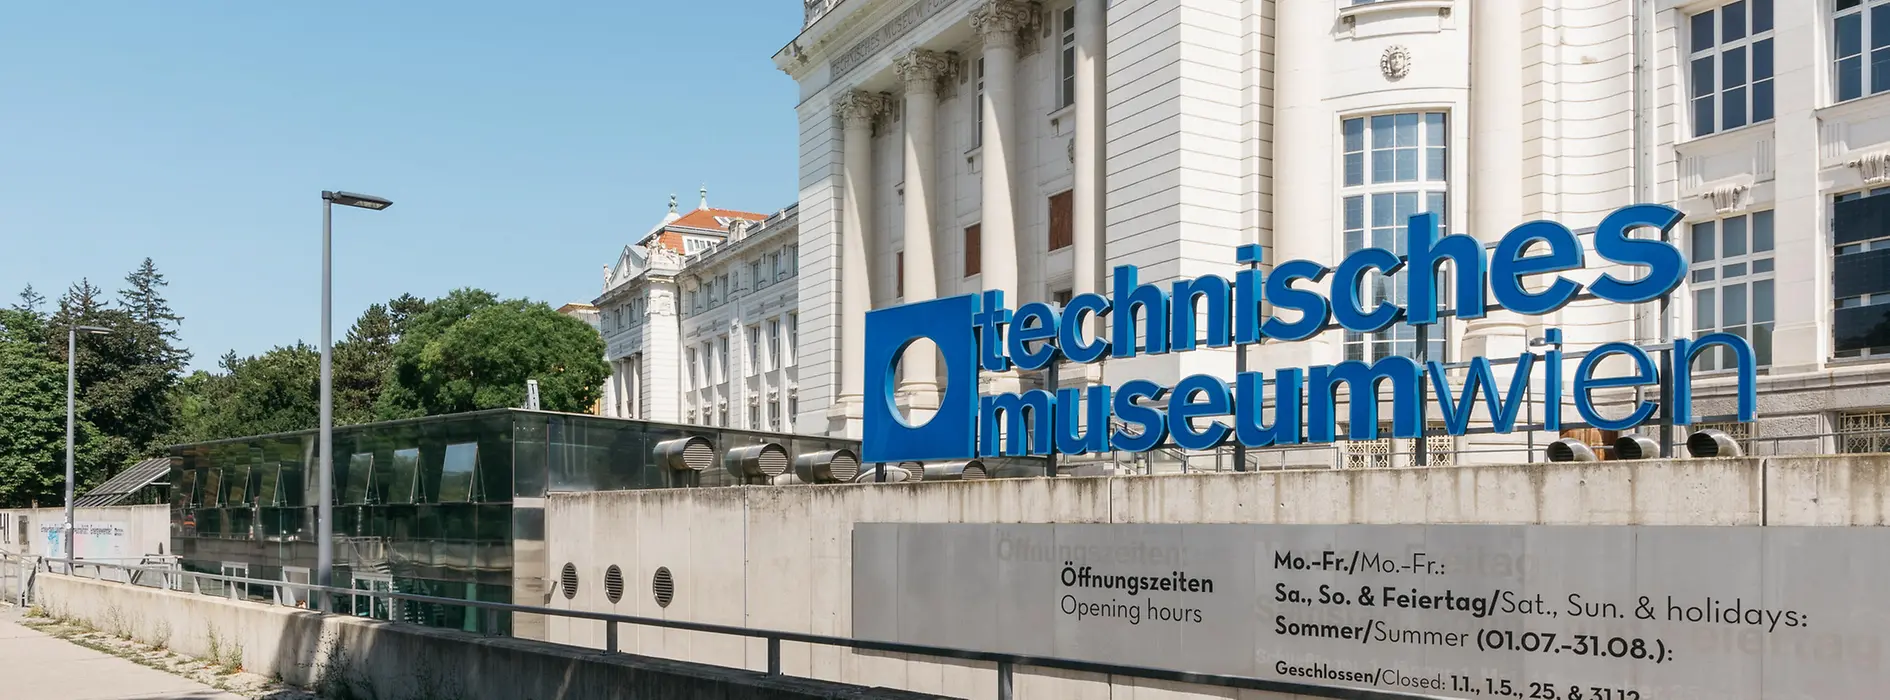 Museo de la Técnica de Viena